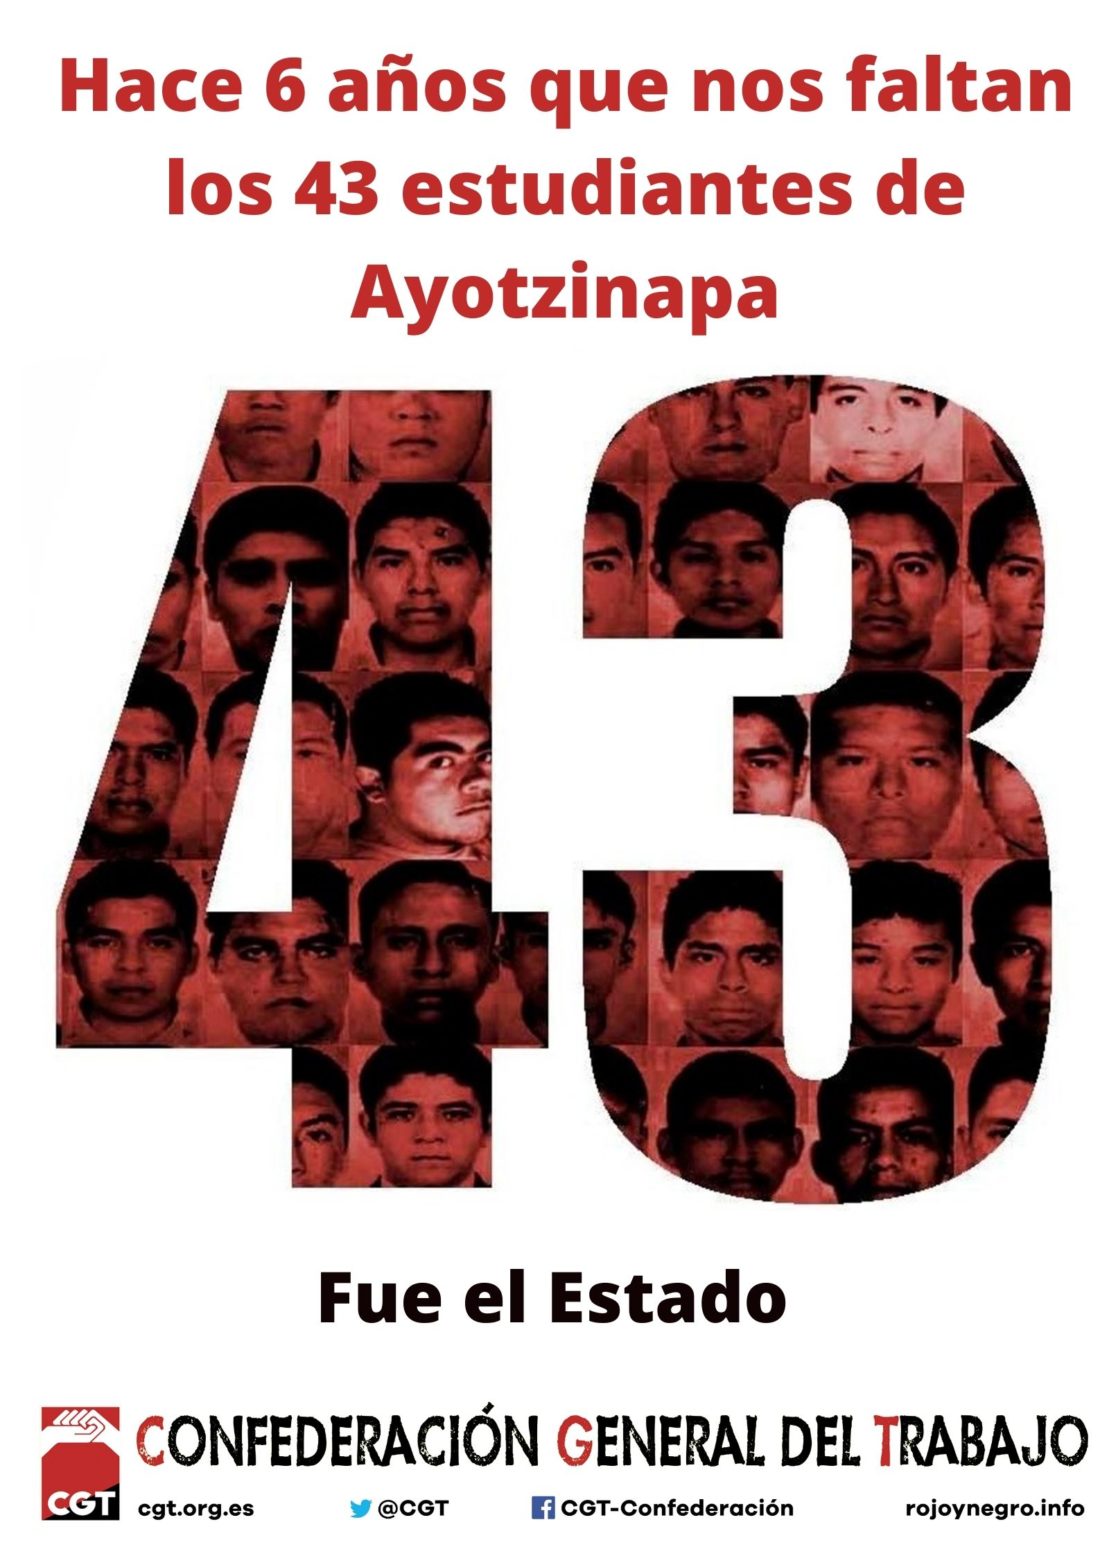 6 años sin justicia tras la desaparición forzada de los 43 estudiantes de Ayotzinapa en México